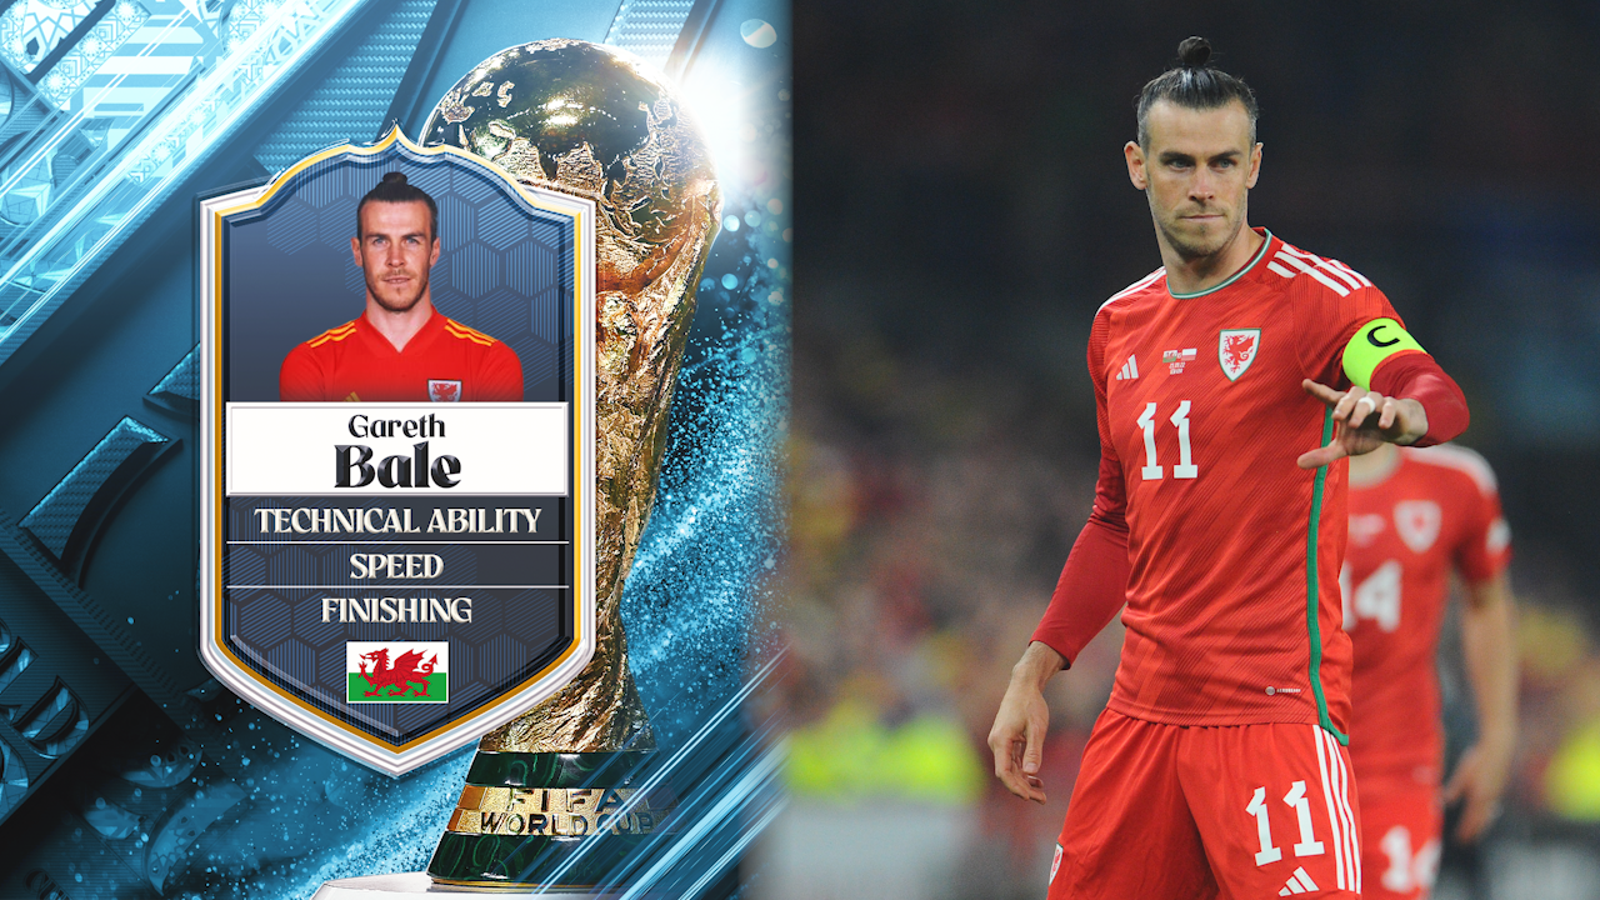 Gareth Bale ranks No. 42